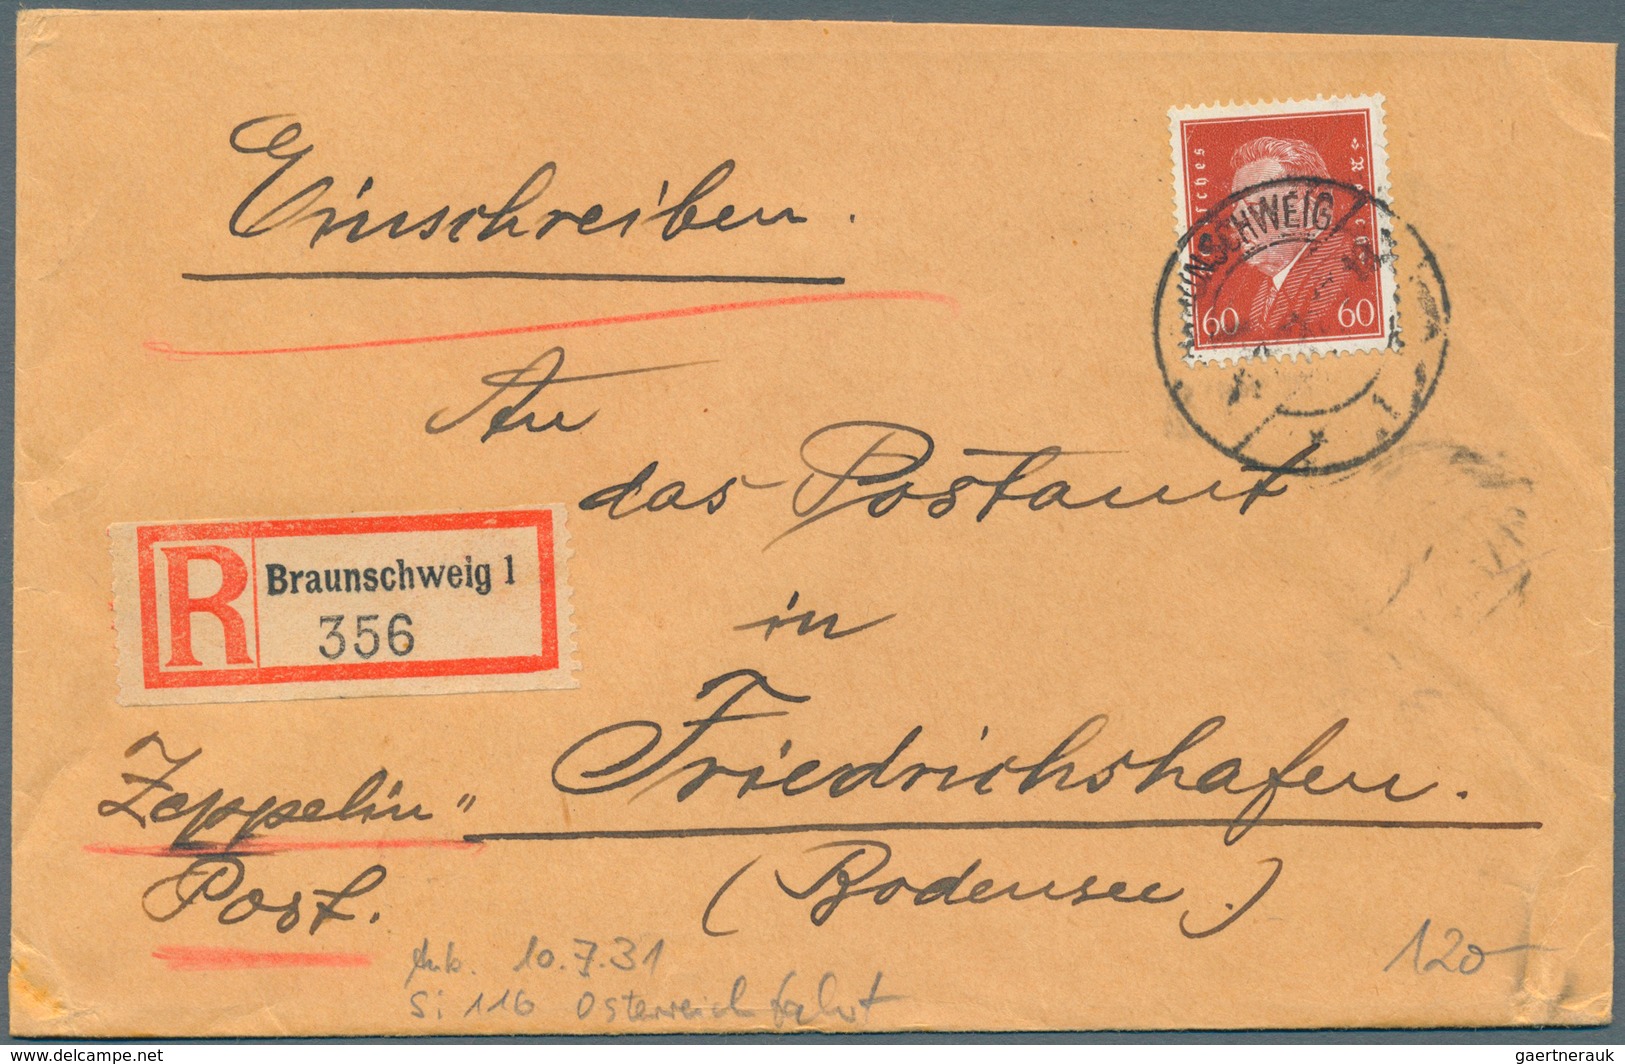 Zeppelinpost Deutschland: 1929/33, 125 Briefe adressiert nach Friedrichshafen an das dortige Postamt